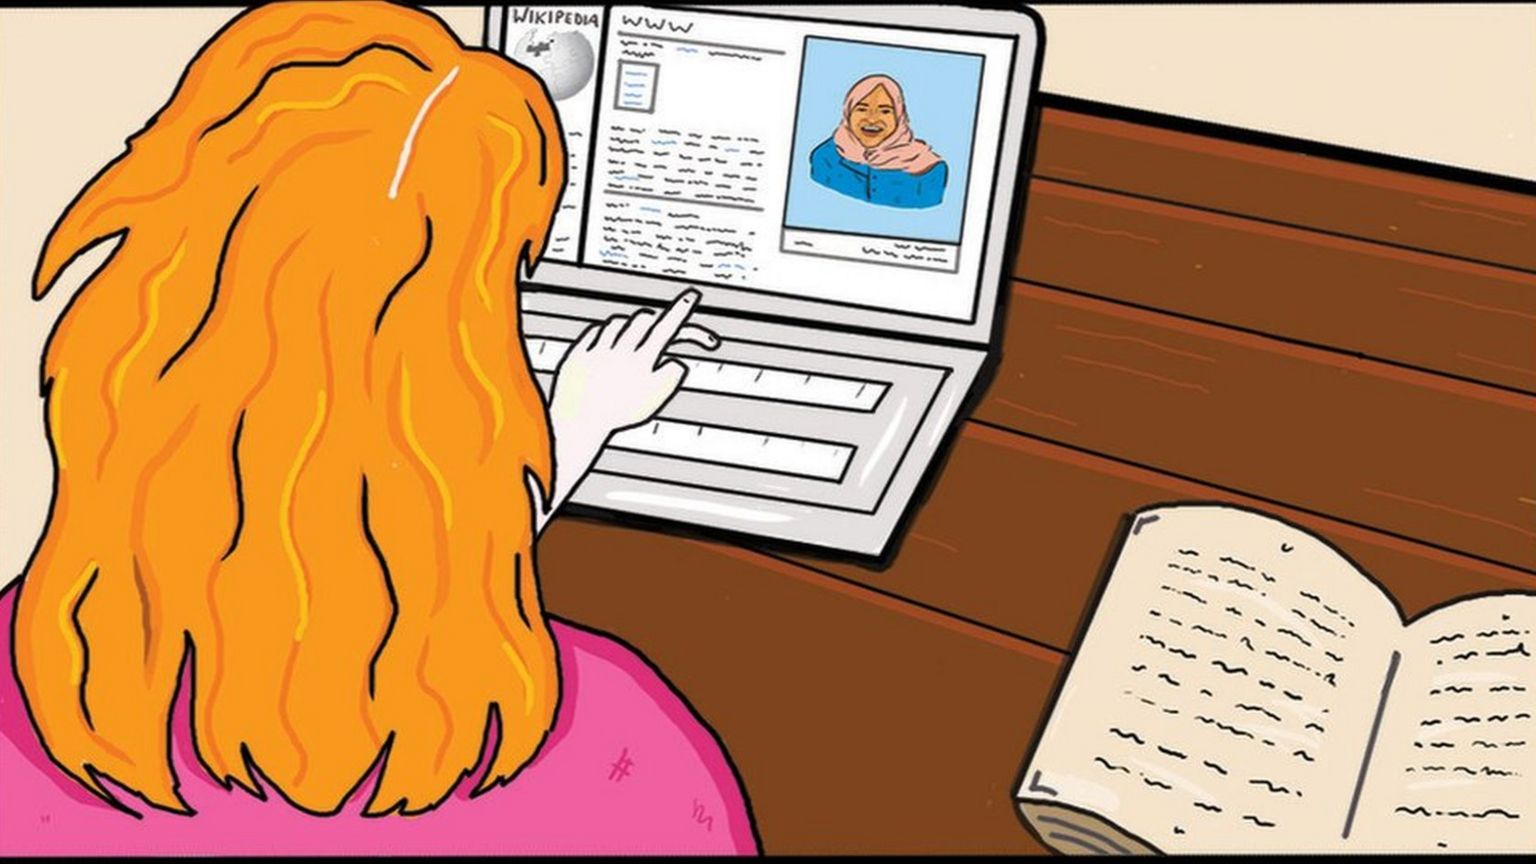 cartoon of woman editing Wikipedia